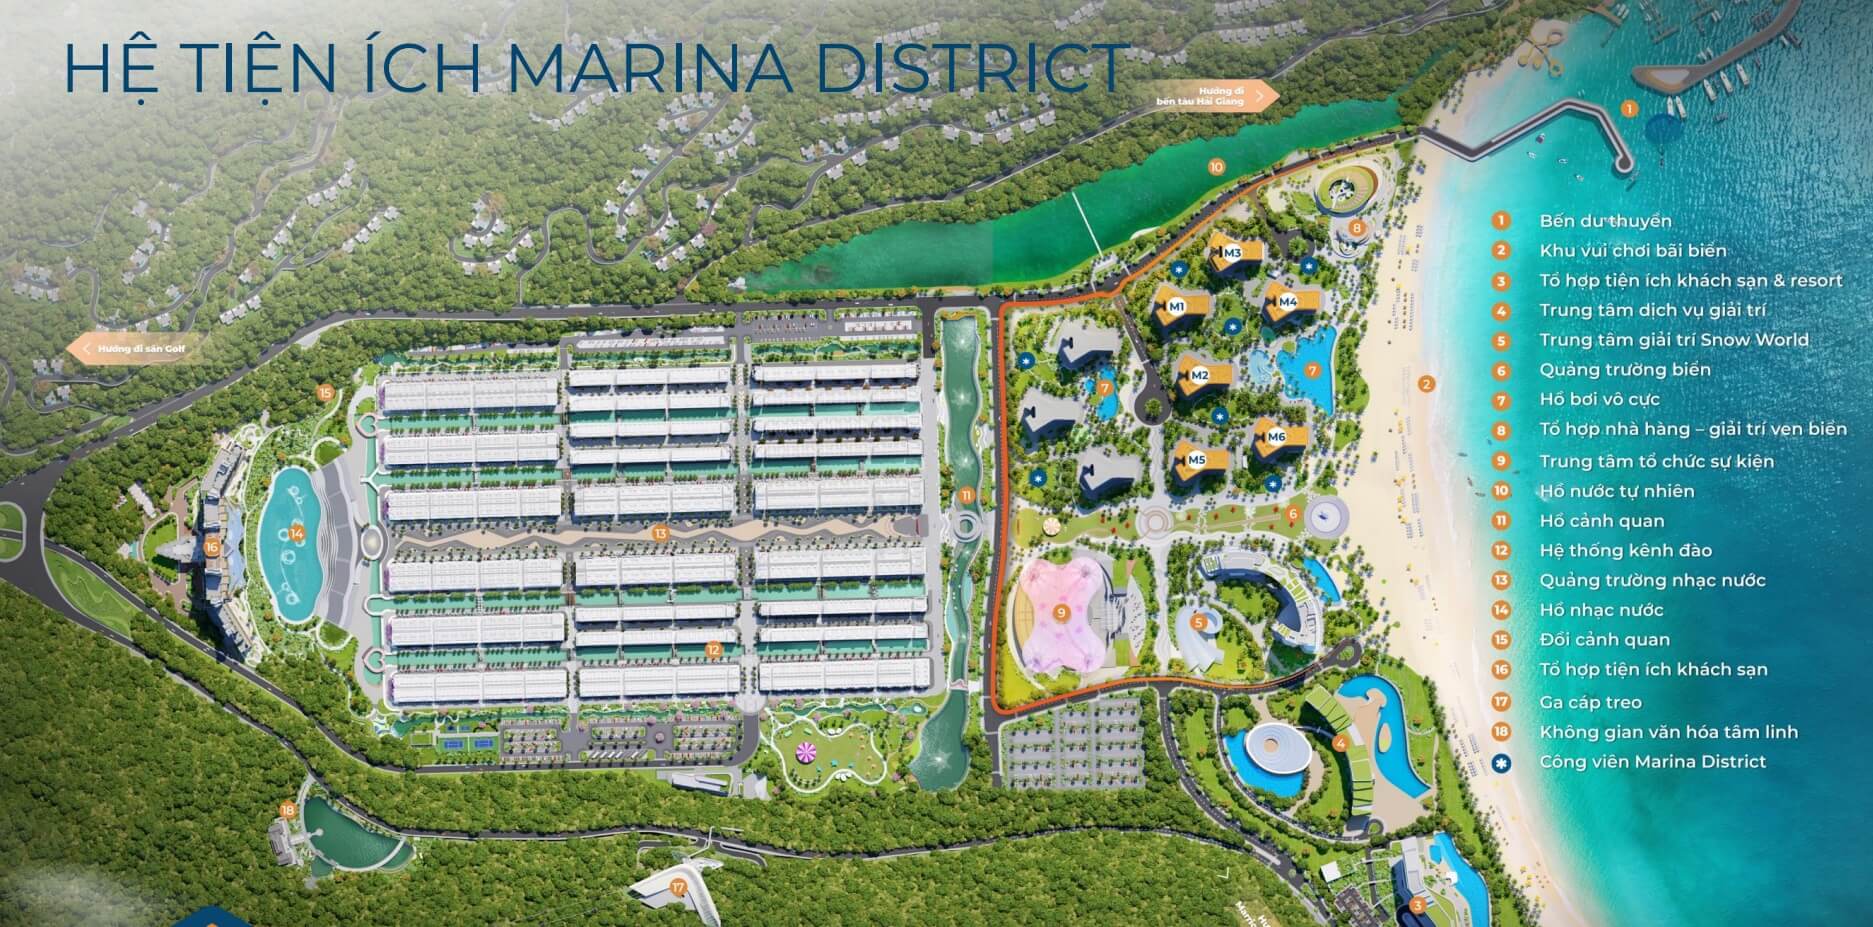 Mặt bằng hệ tiện ích Marina District